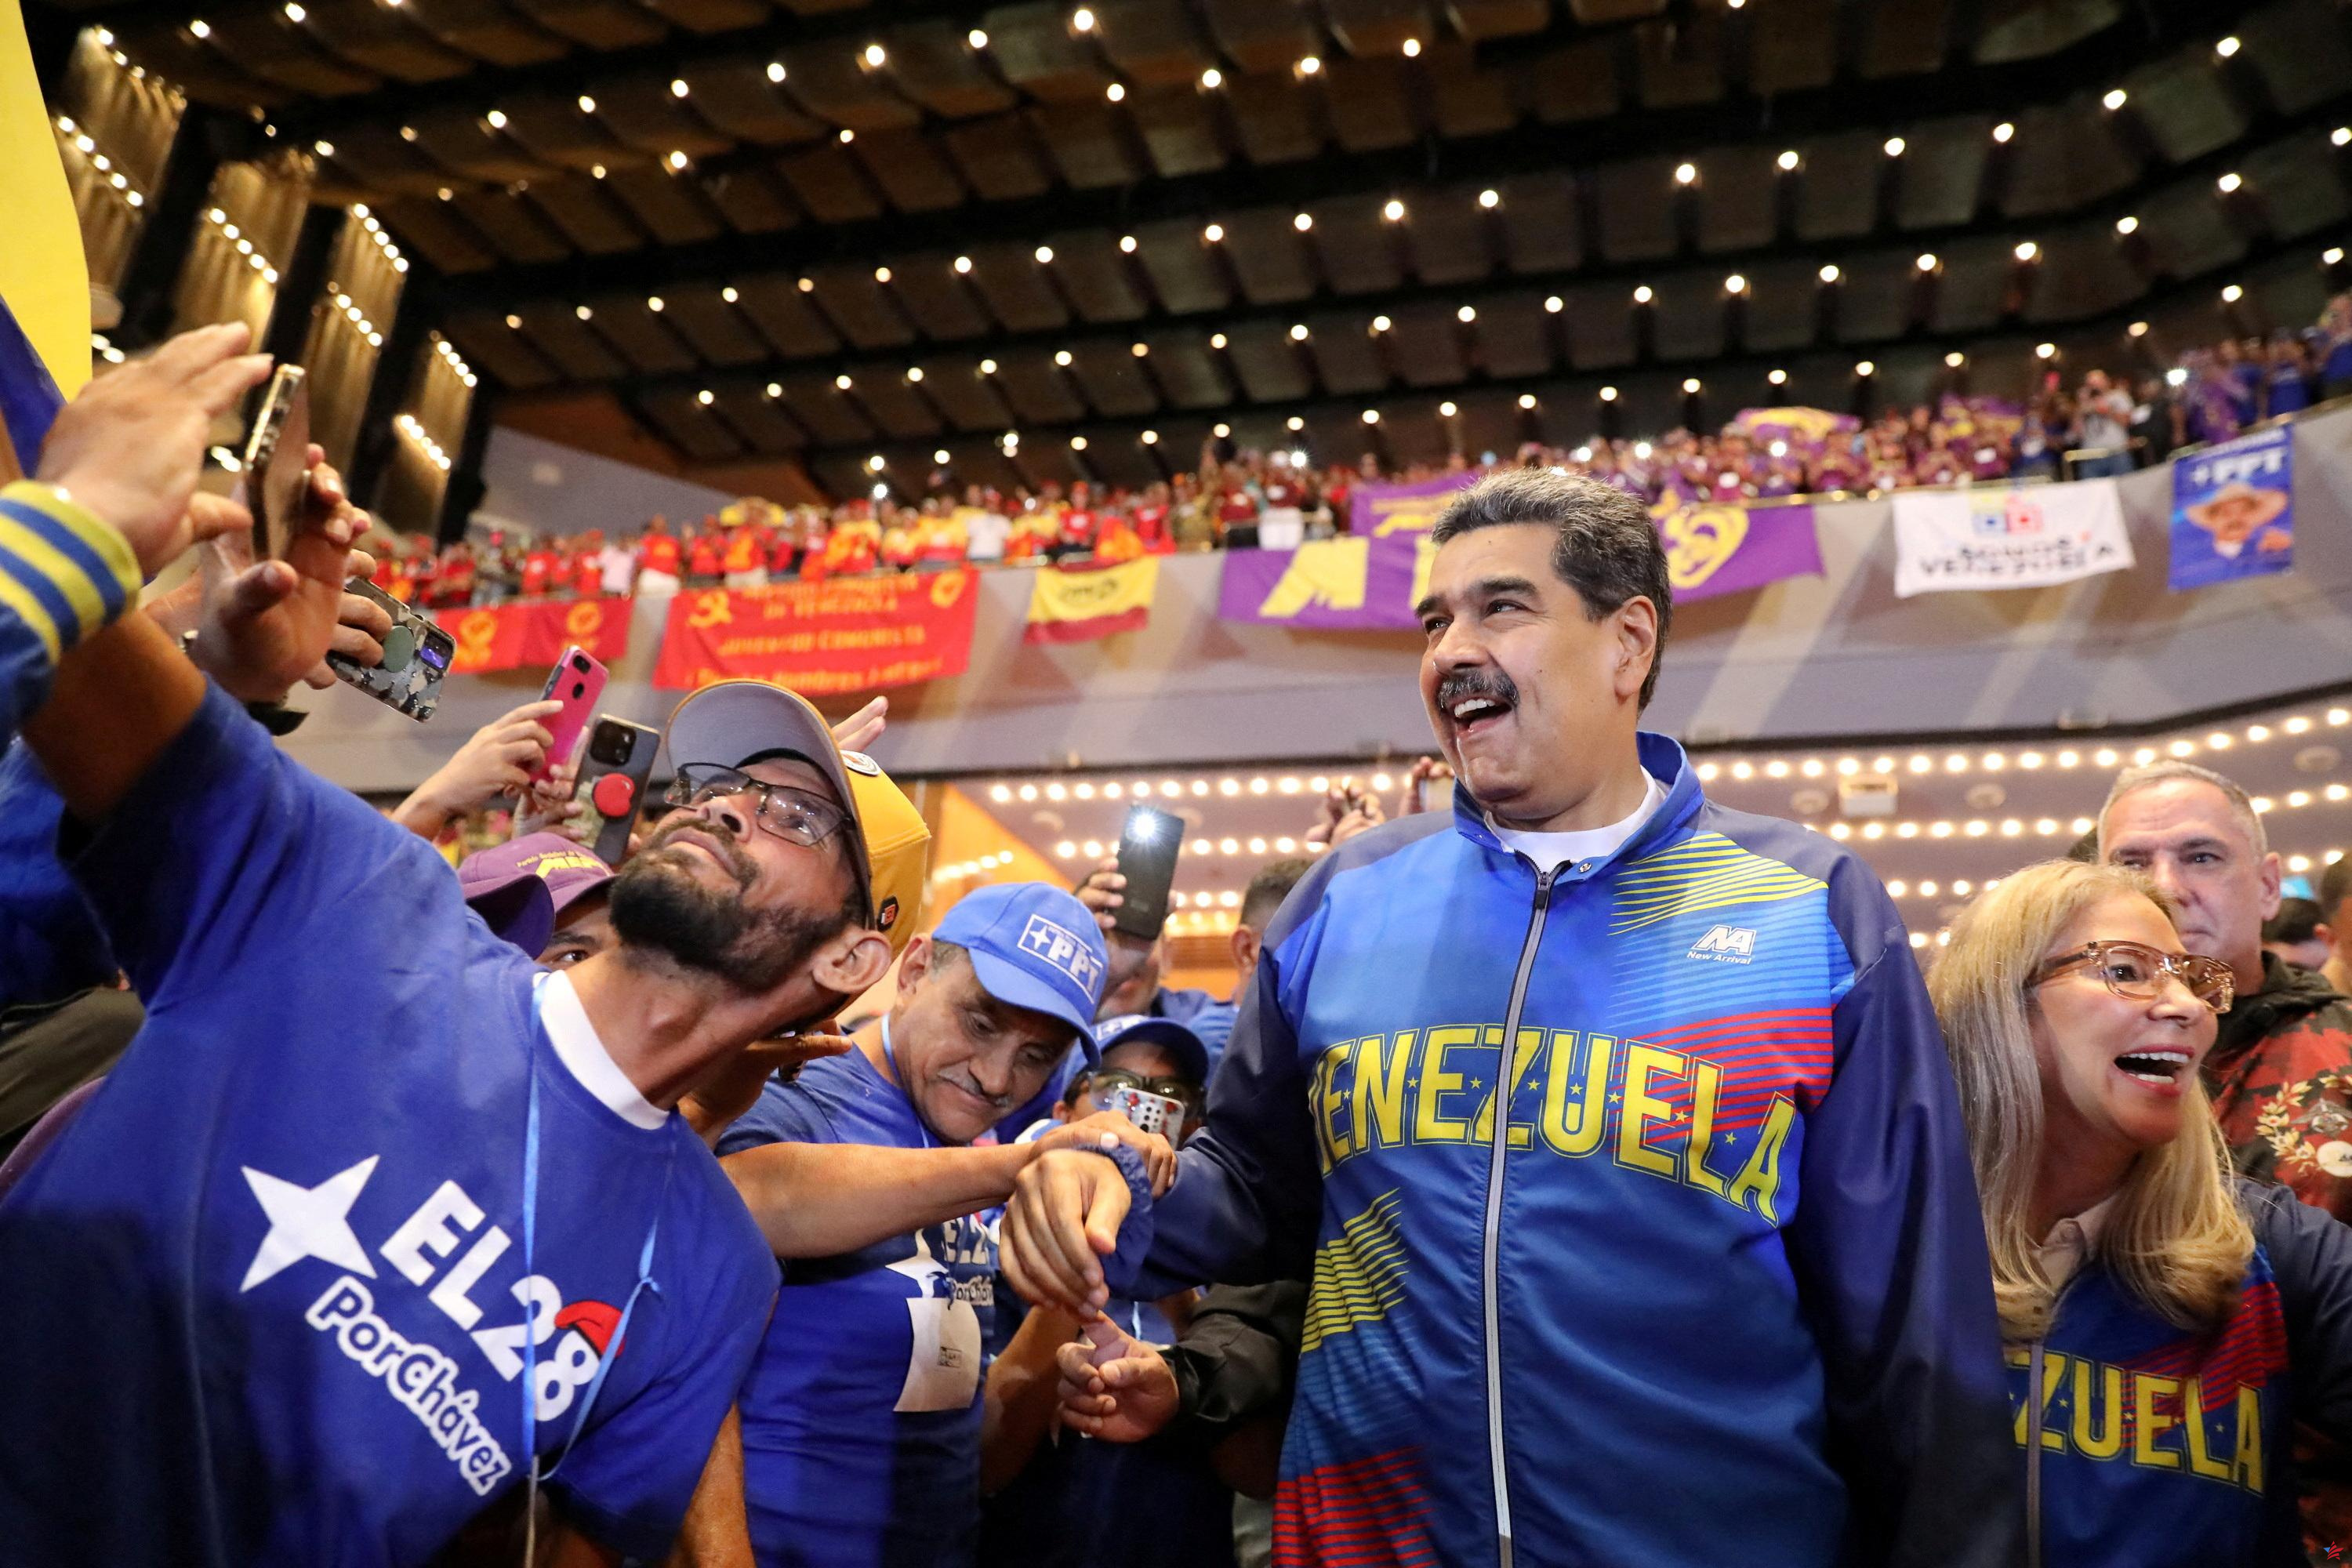 Venezuela: Maduro por una “ley contra el fascismo” dirigida a opositores que han promovido la “violencia”